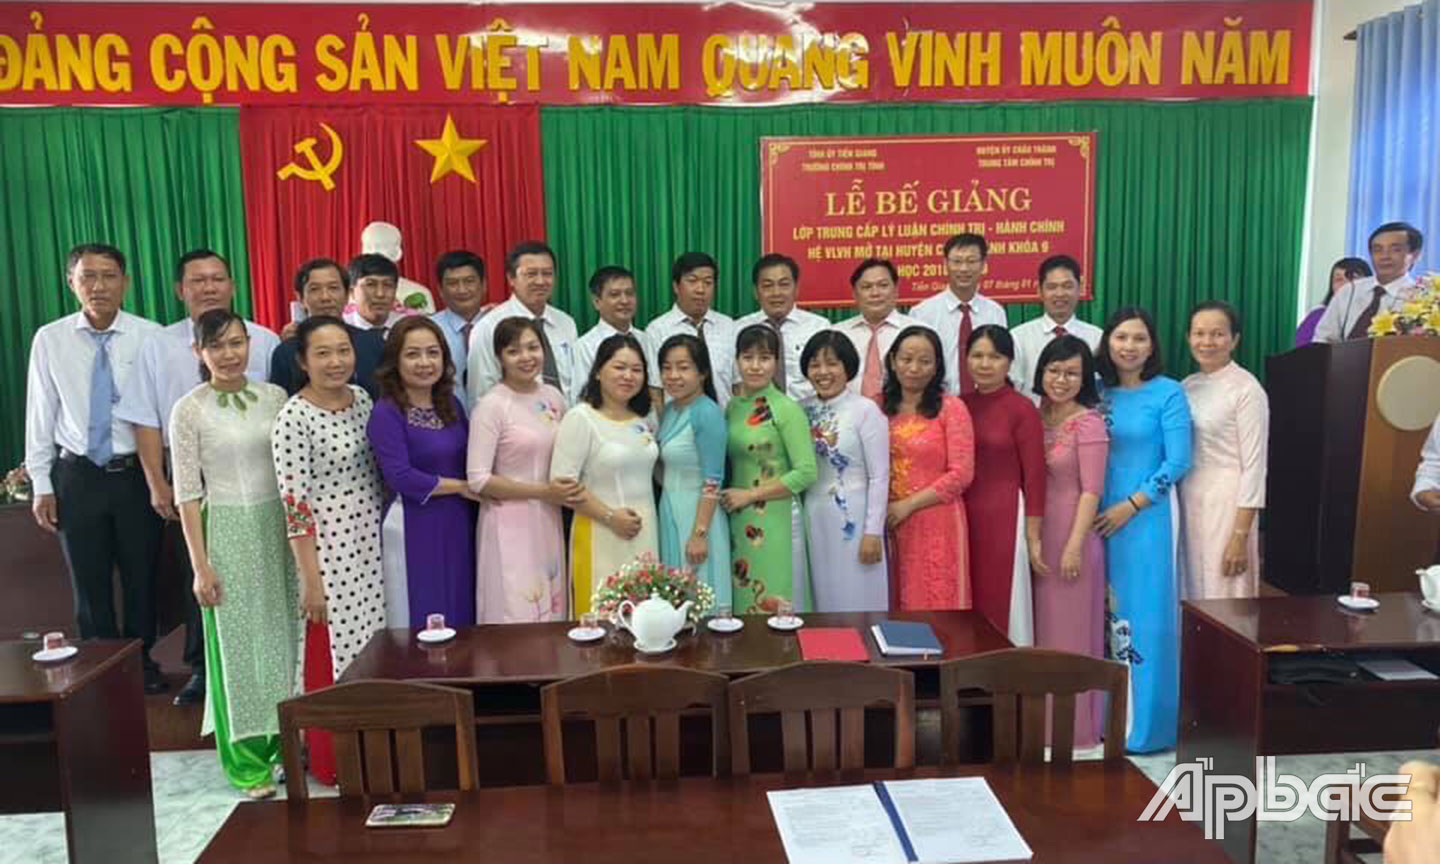 Huyện ủy Châu Thành phối hợp Trường Chính trị tỉnh Tiền Giang mở lớp Trung cấp Chính trị - Hành chính tại huyện  (ảnh chụp trước khi dịch Covid-19 bùng phát). 